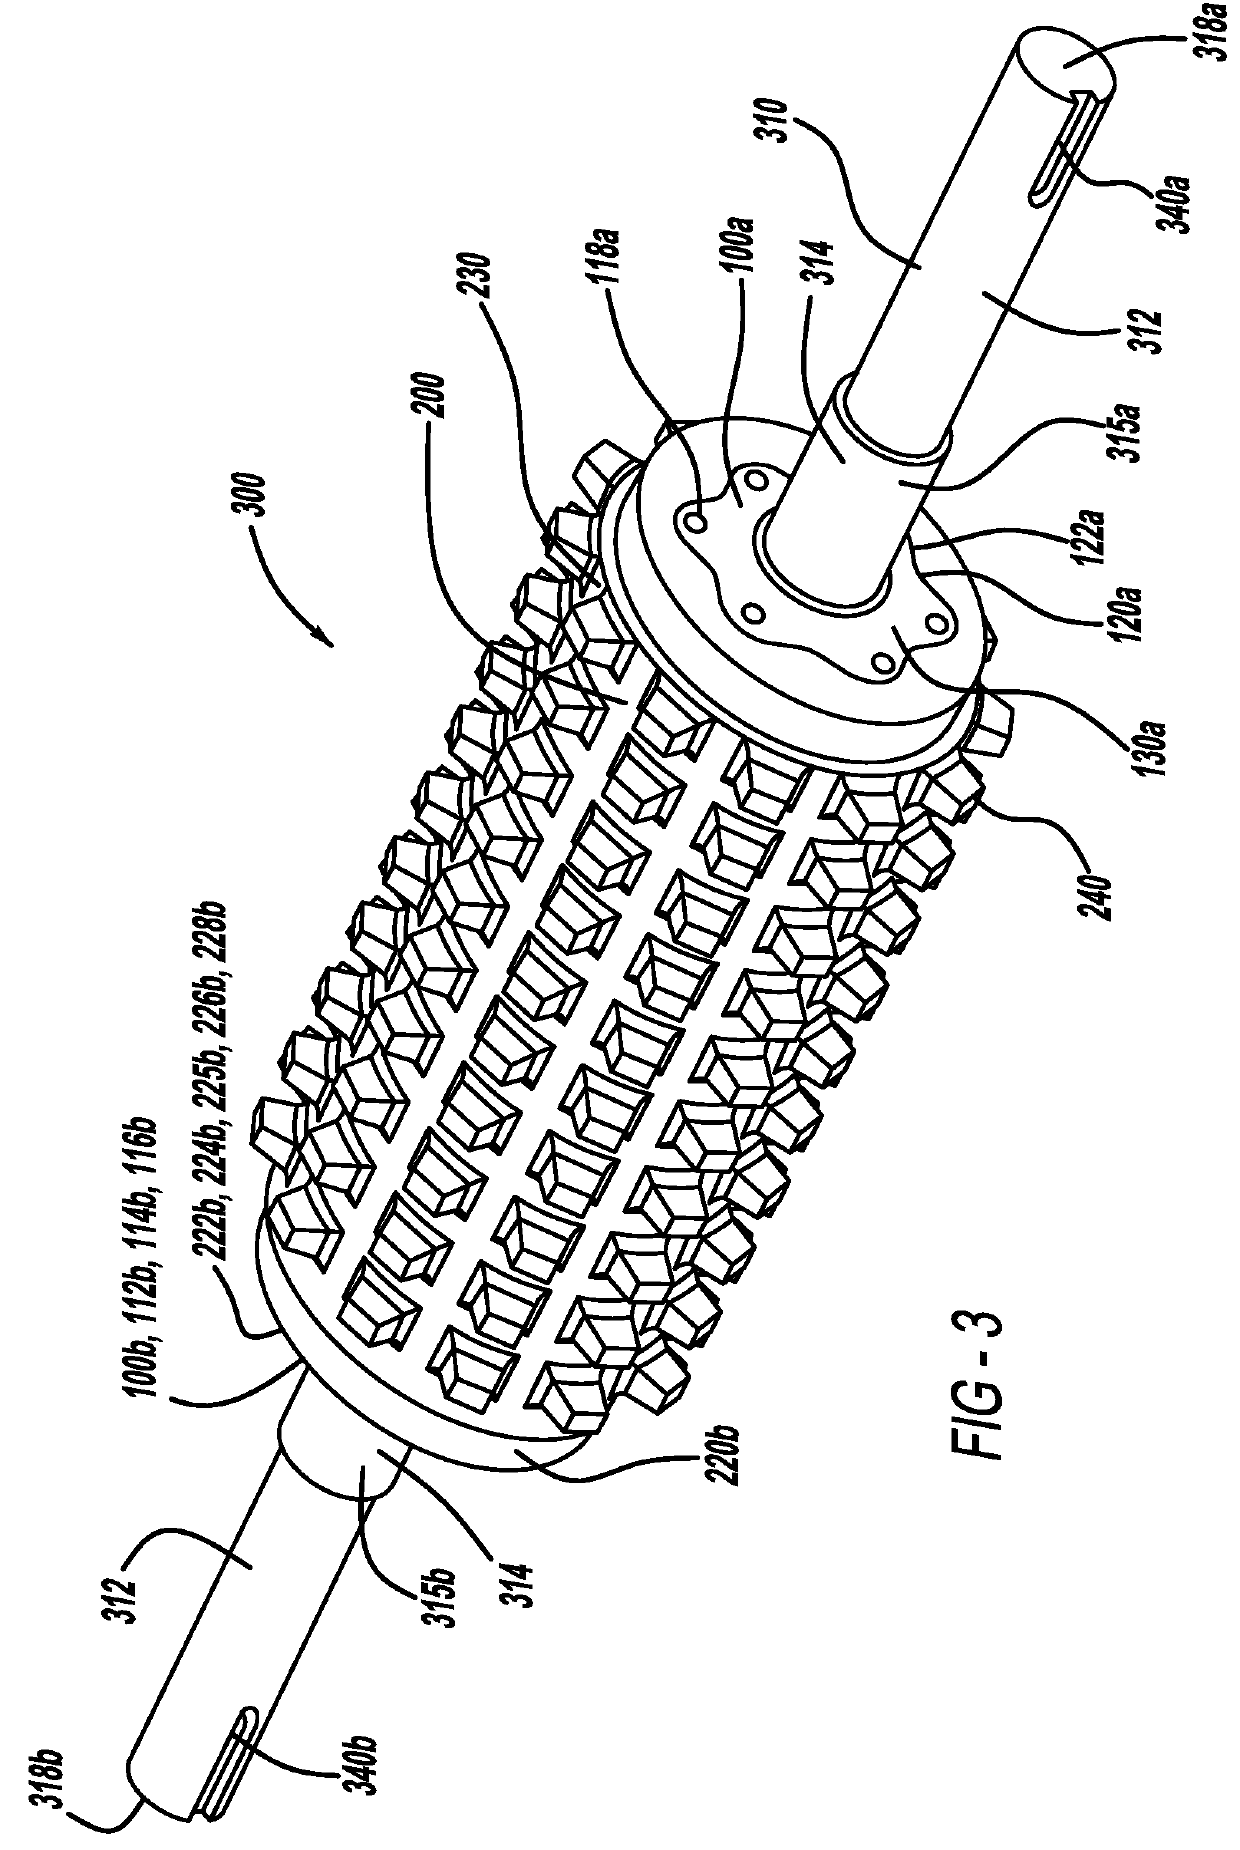 Shaft-to-roller attachment for clinker grinder roller